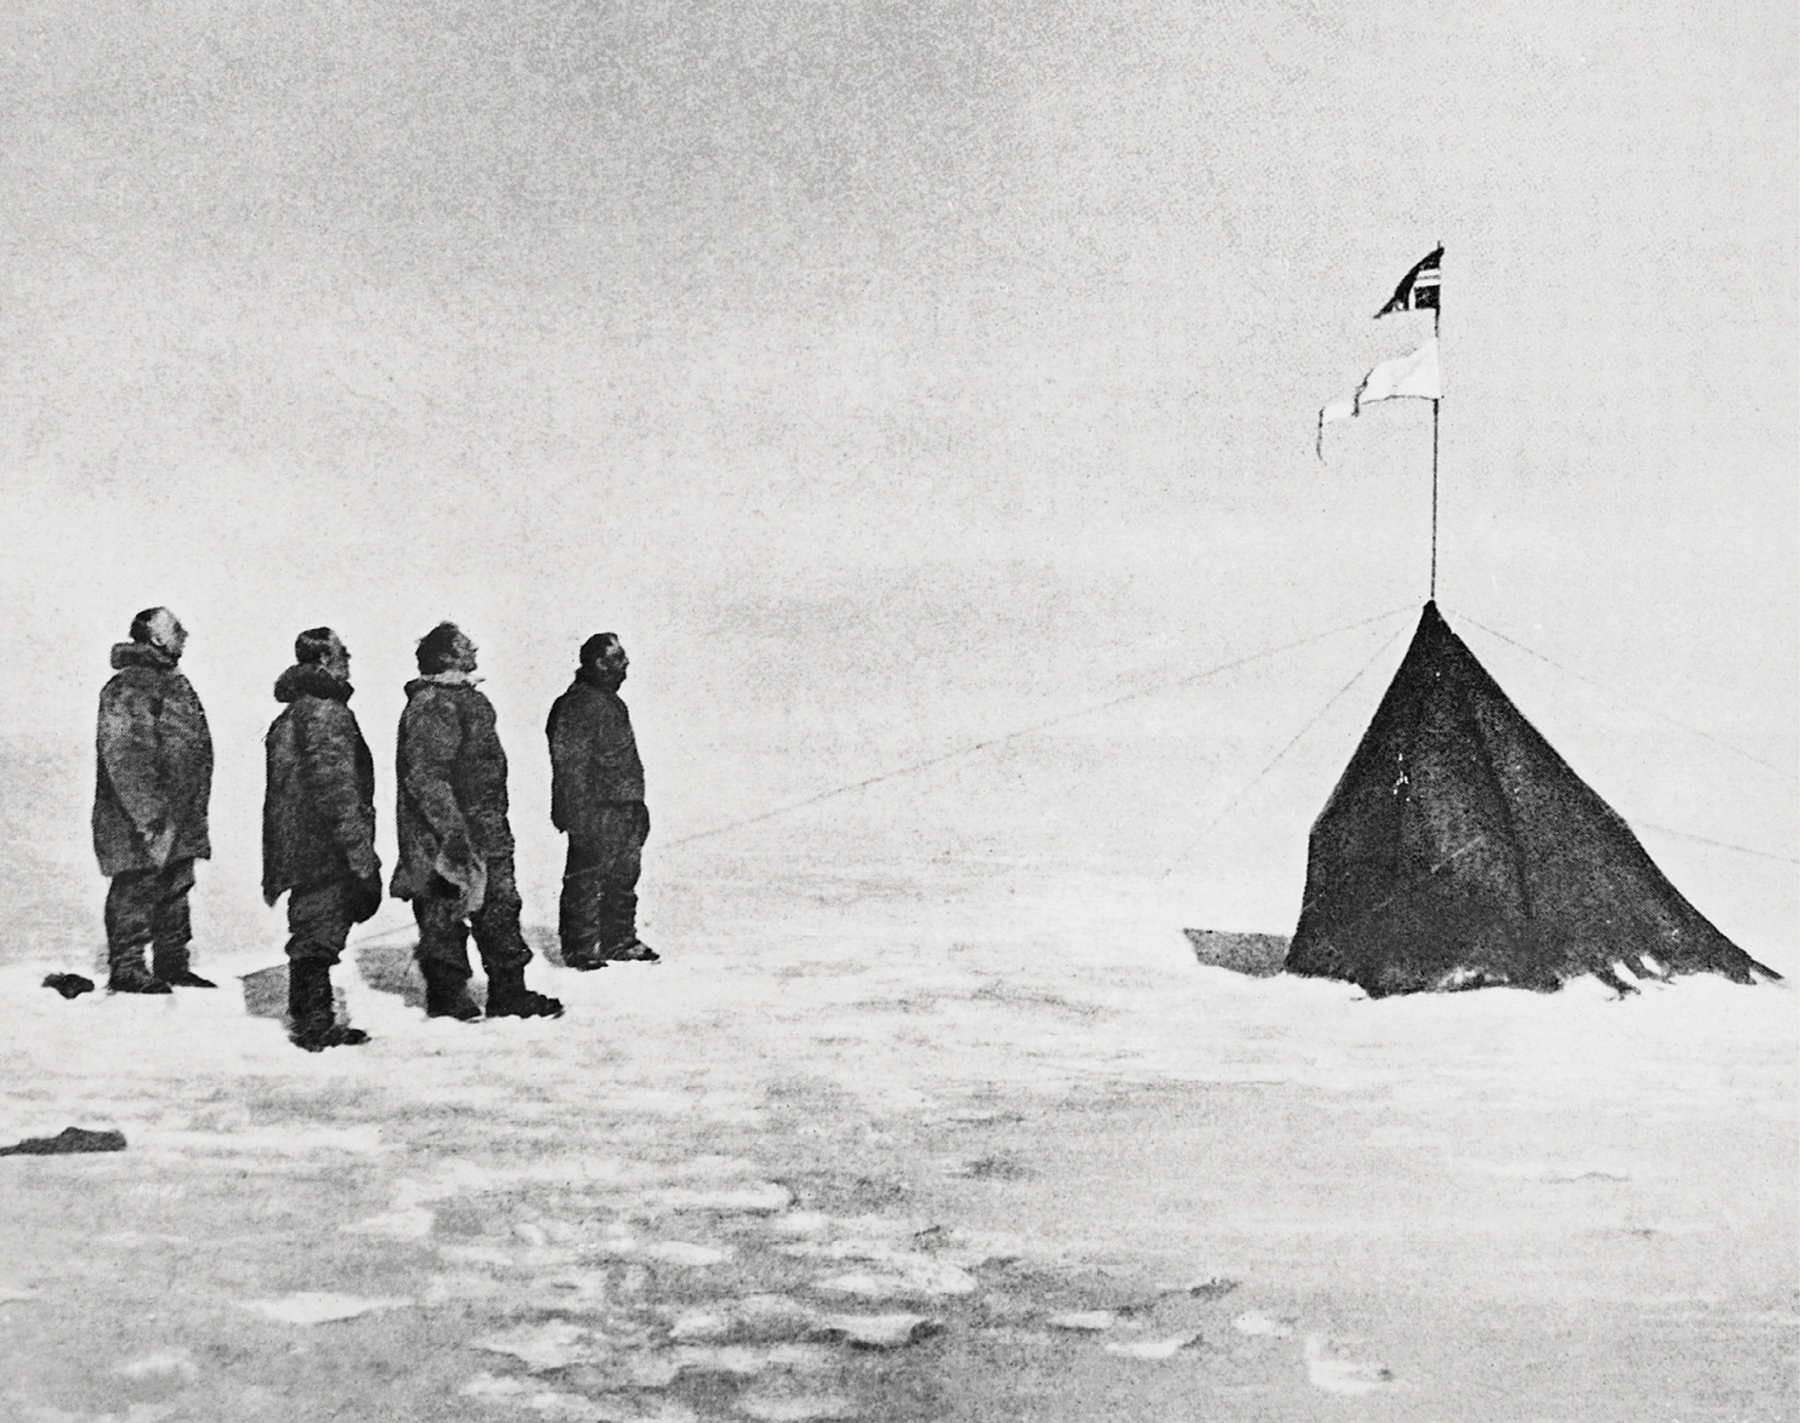 Fotografia.
Em preto e branco. Quatro homens agasalhados com casacos grossos e botas estão em pé sobre uma superfície coberta de neve, olhando para uma bandeira hasteada em mastro apoiado em uma tenda, à direita.